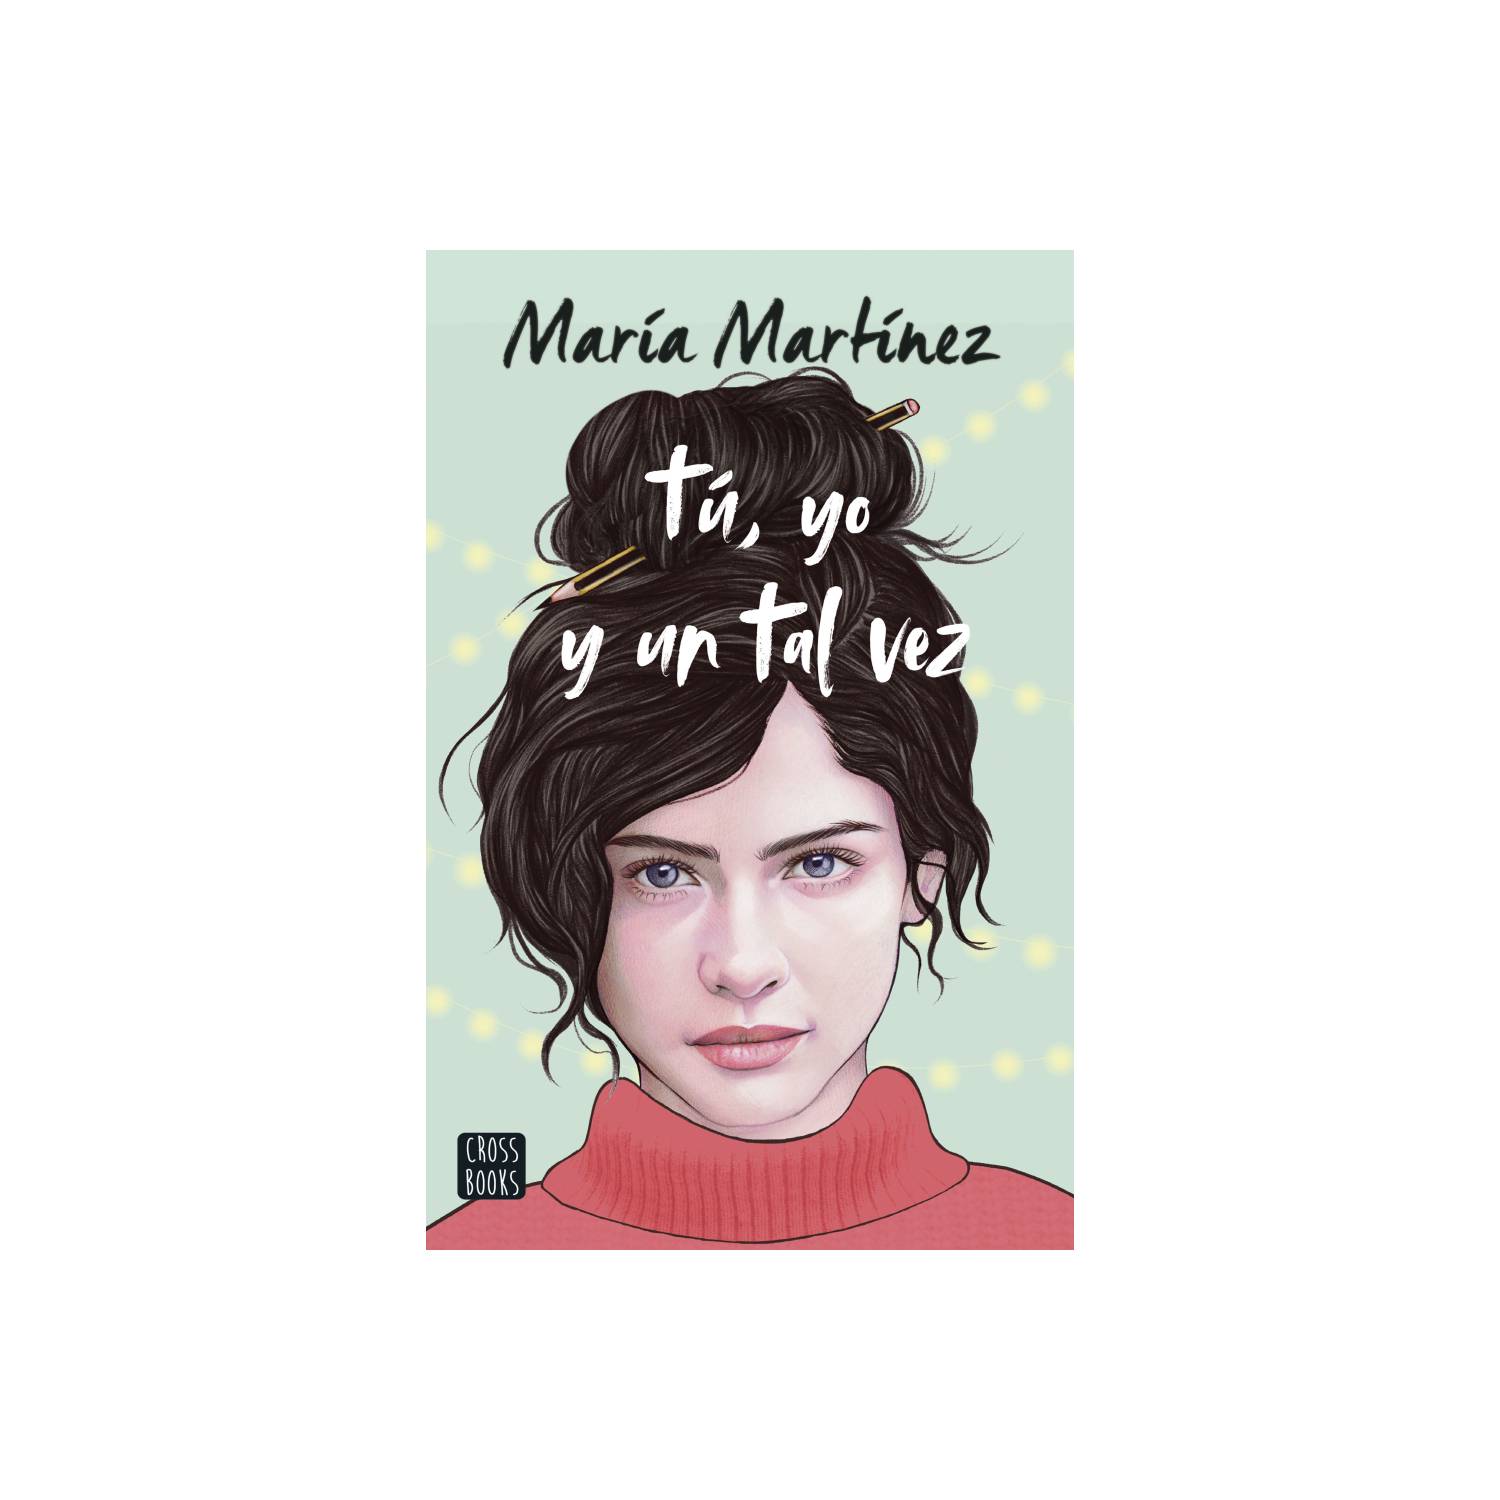 Tú, yo y un tal vez by Maria Martinez